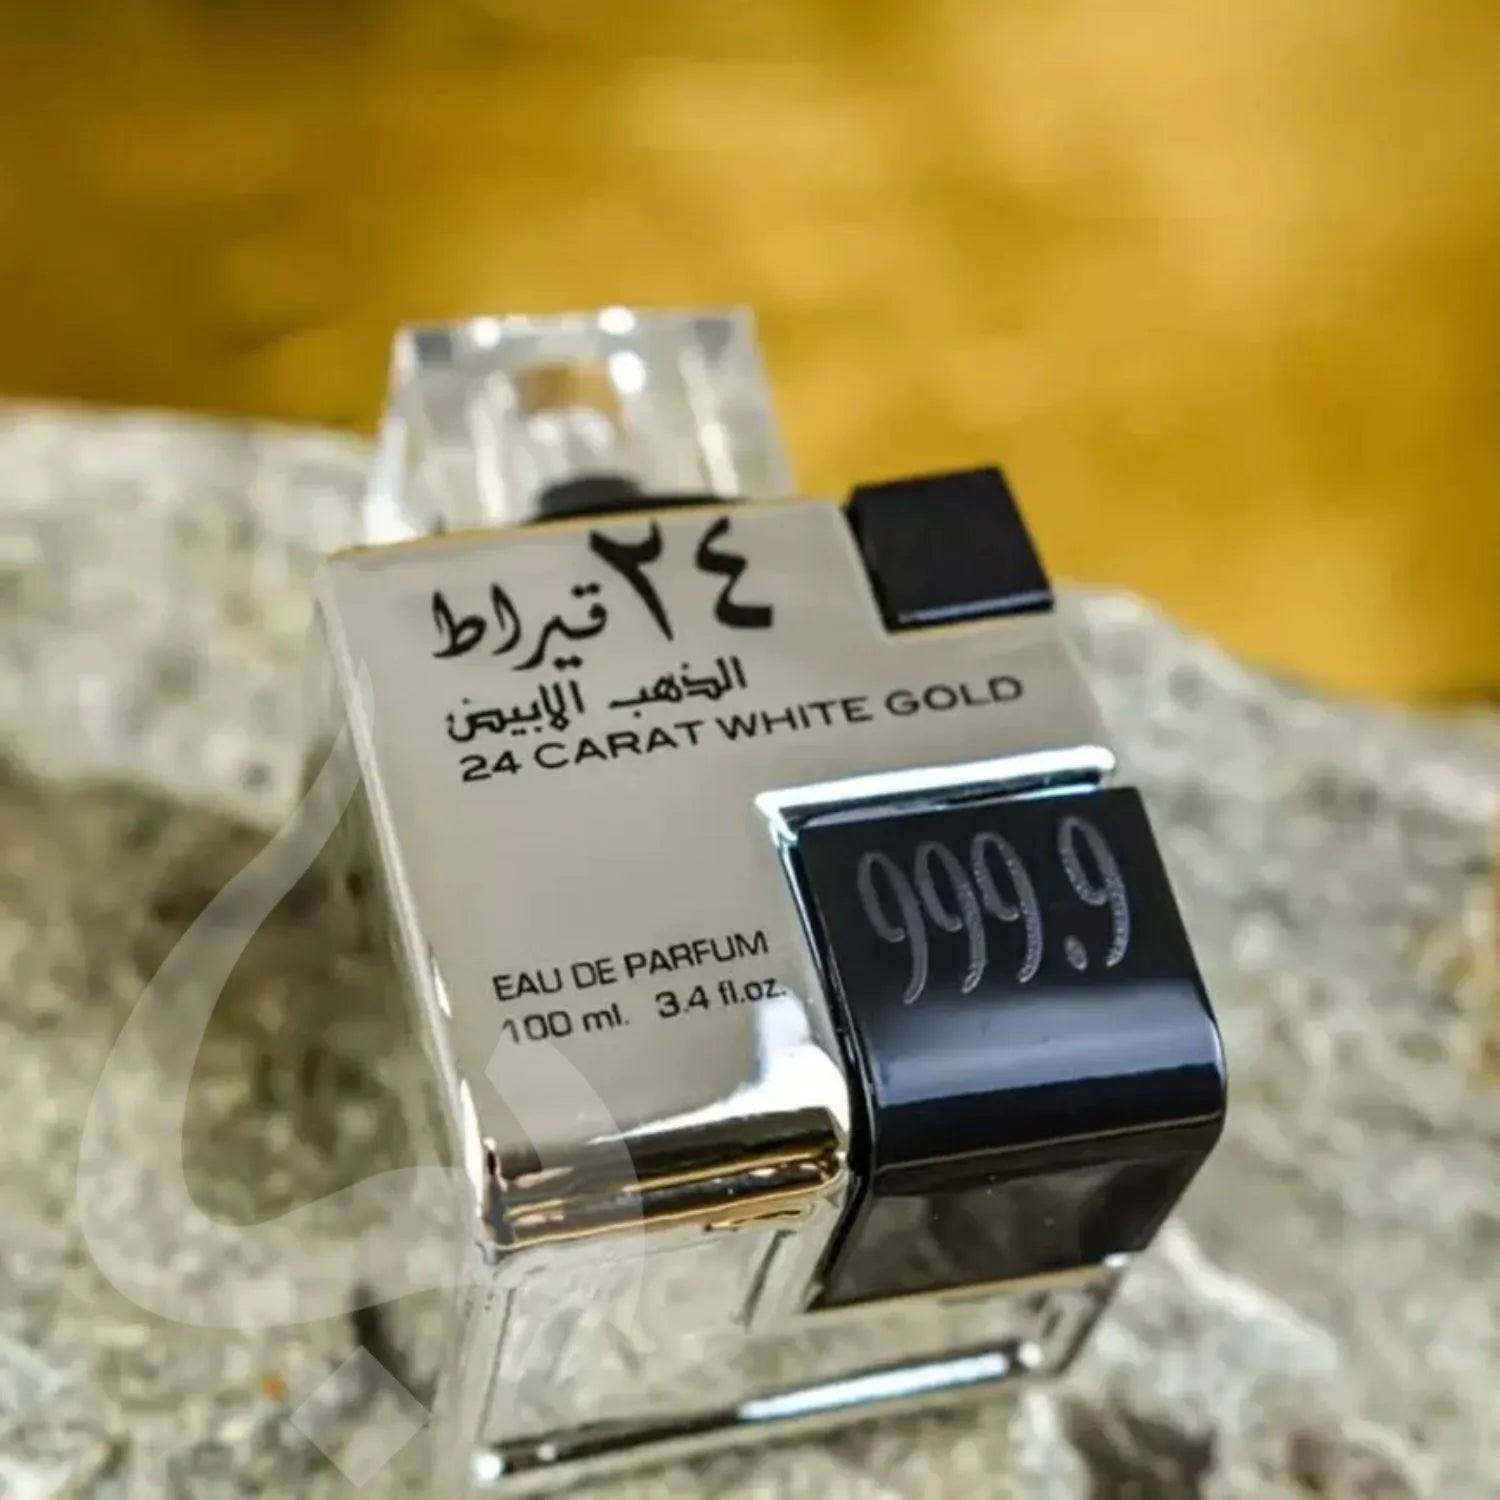 24 Carat White Gold Perfume Display